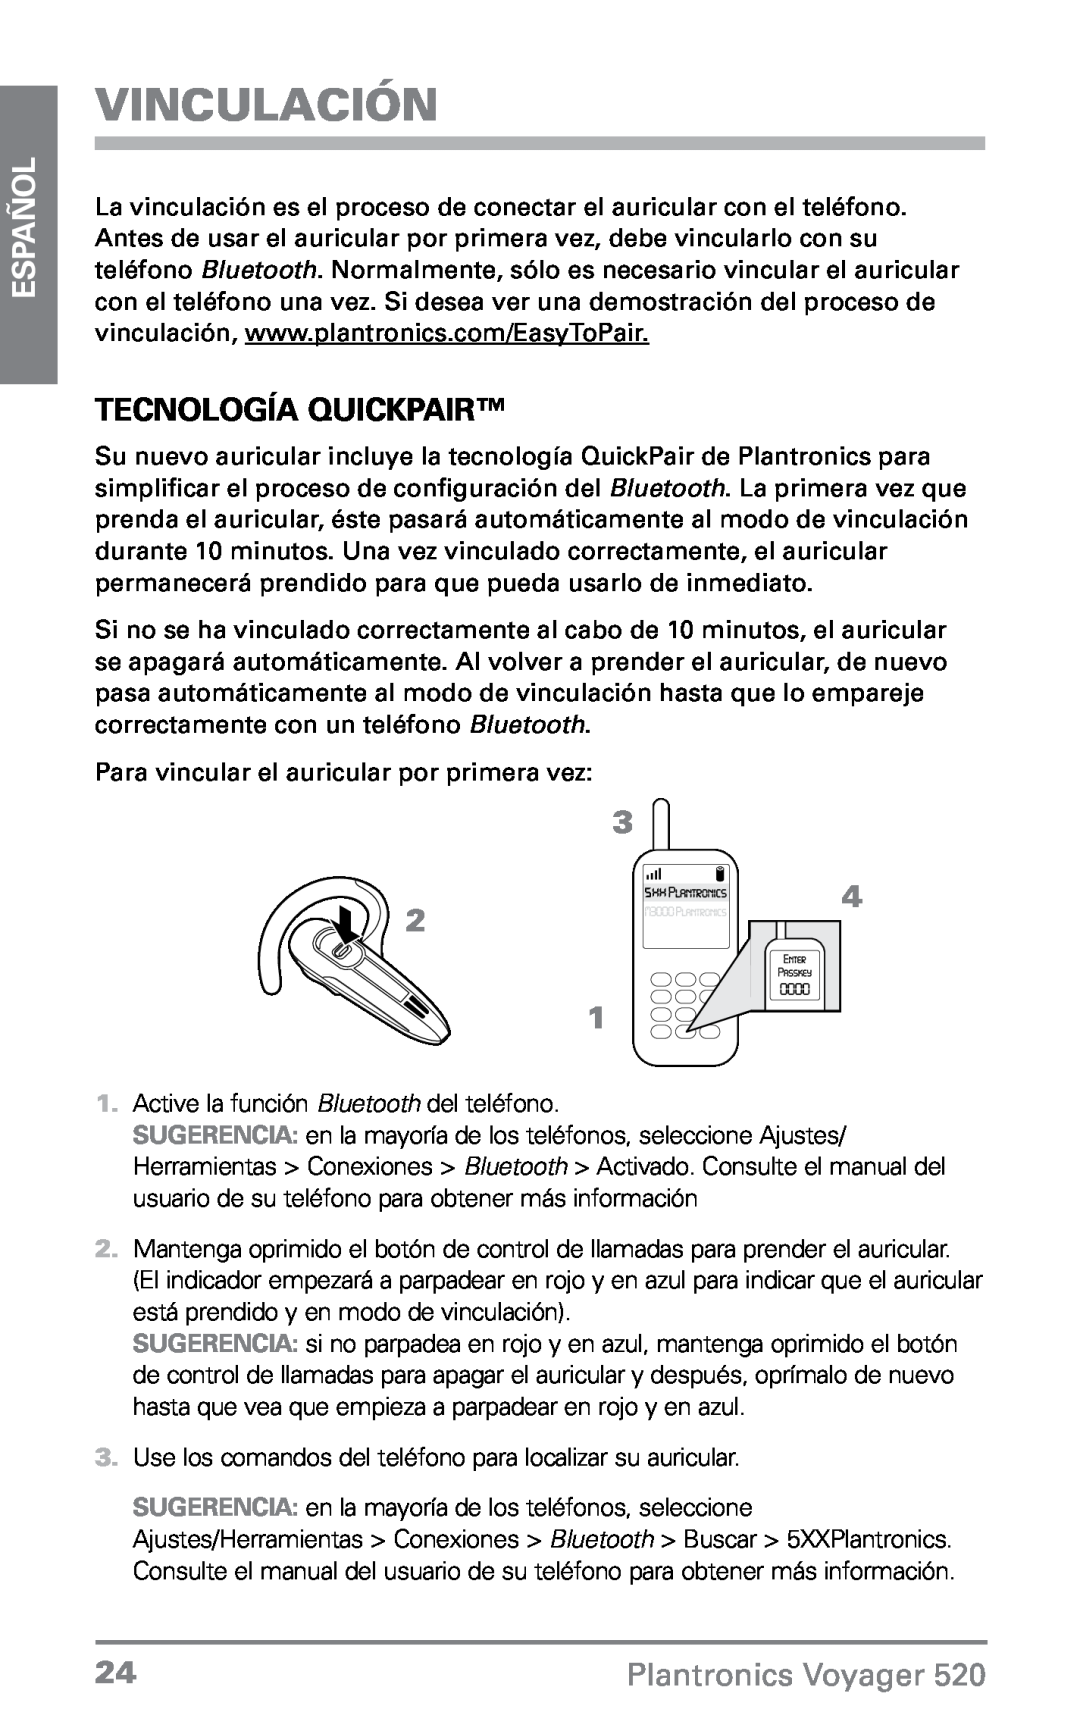 Plantronics 520 manual Vinculación, Tecnología QuickPair, Español, Plantronics Voyager 